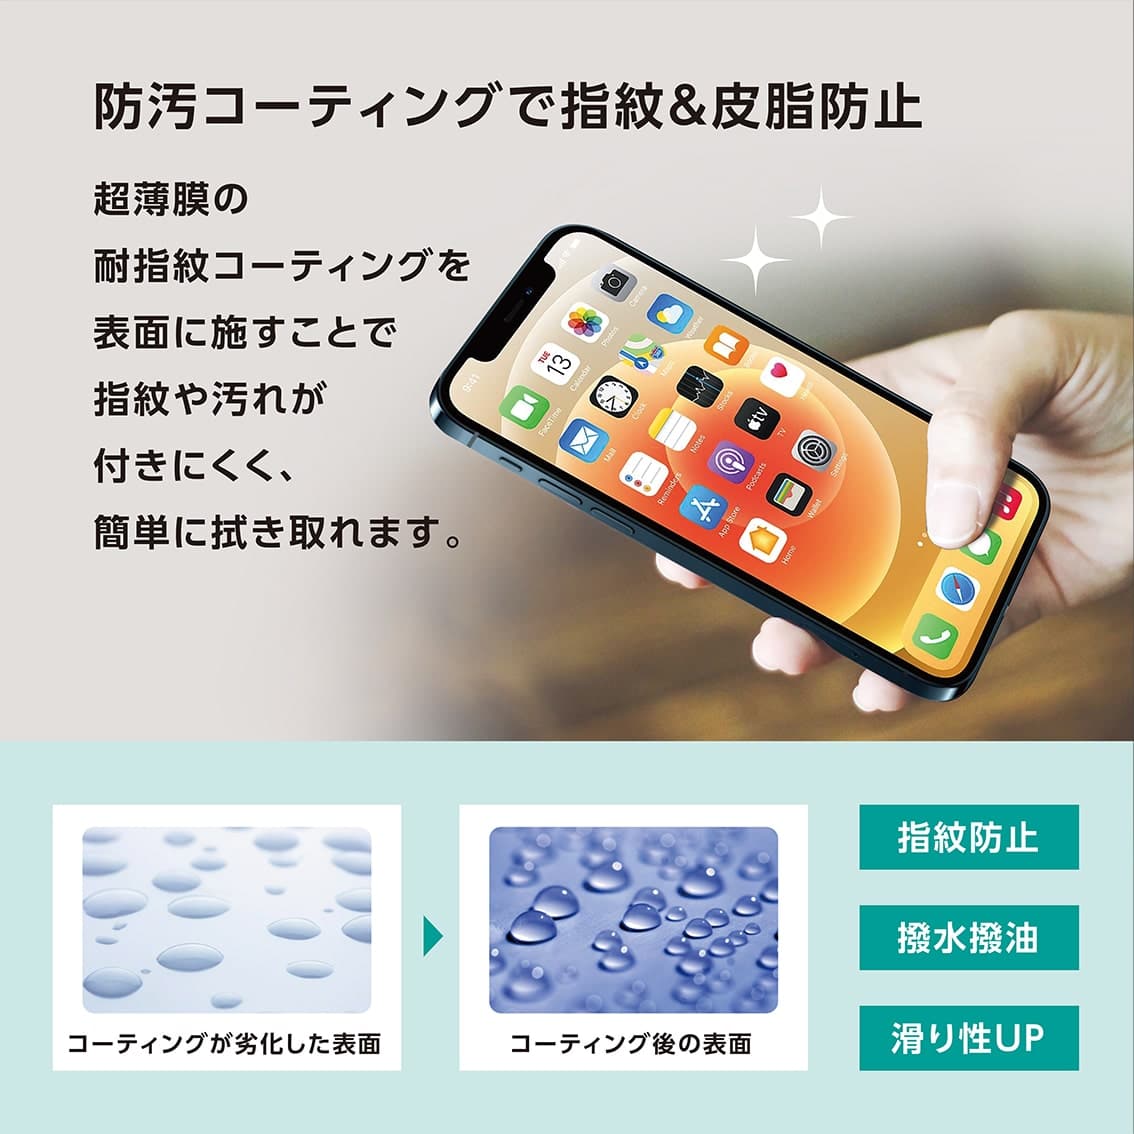 iPhone13 / 13Pro 対応 超薄 0.15mm ガラスフィルム クリア ブルーライトカット 覗き見防止 iPhone 2021年モデル 6.1インチ